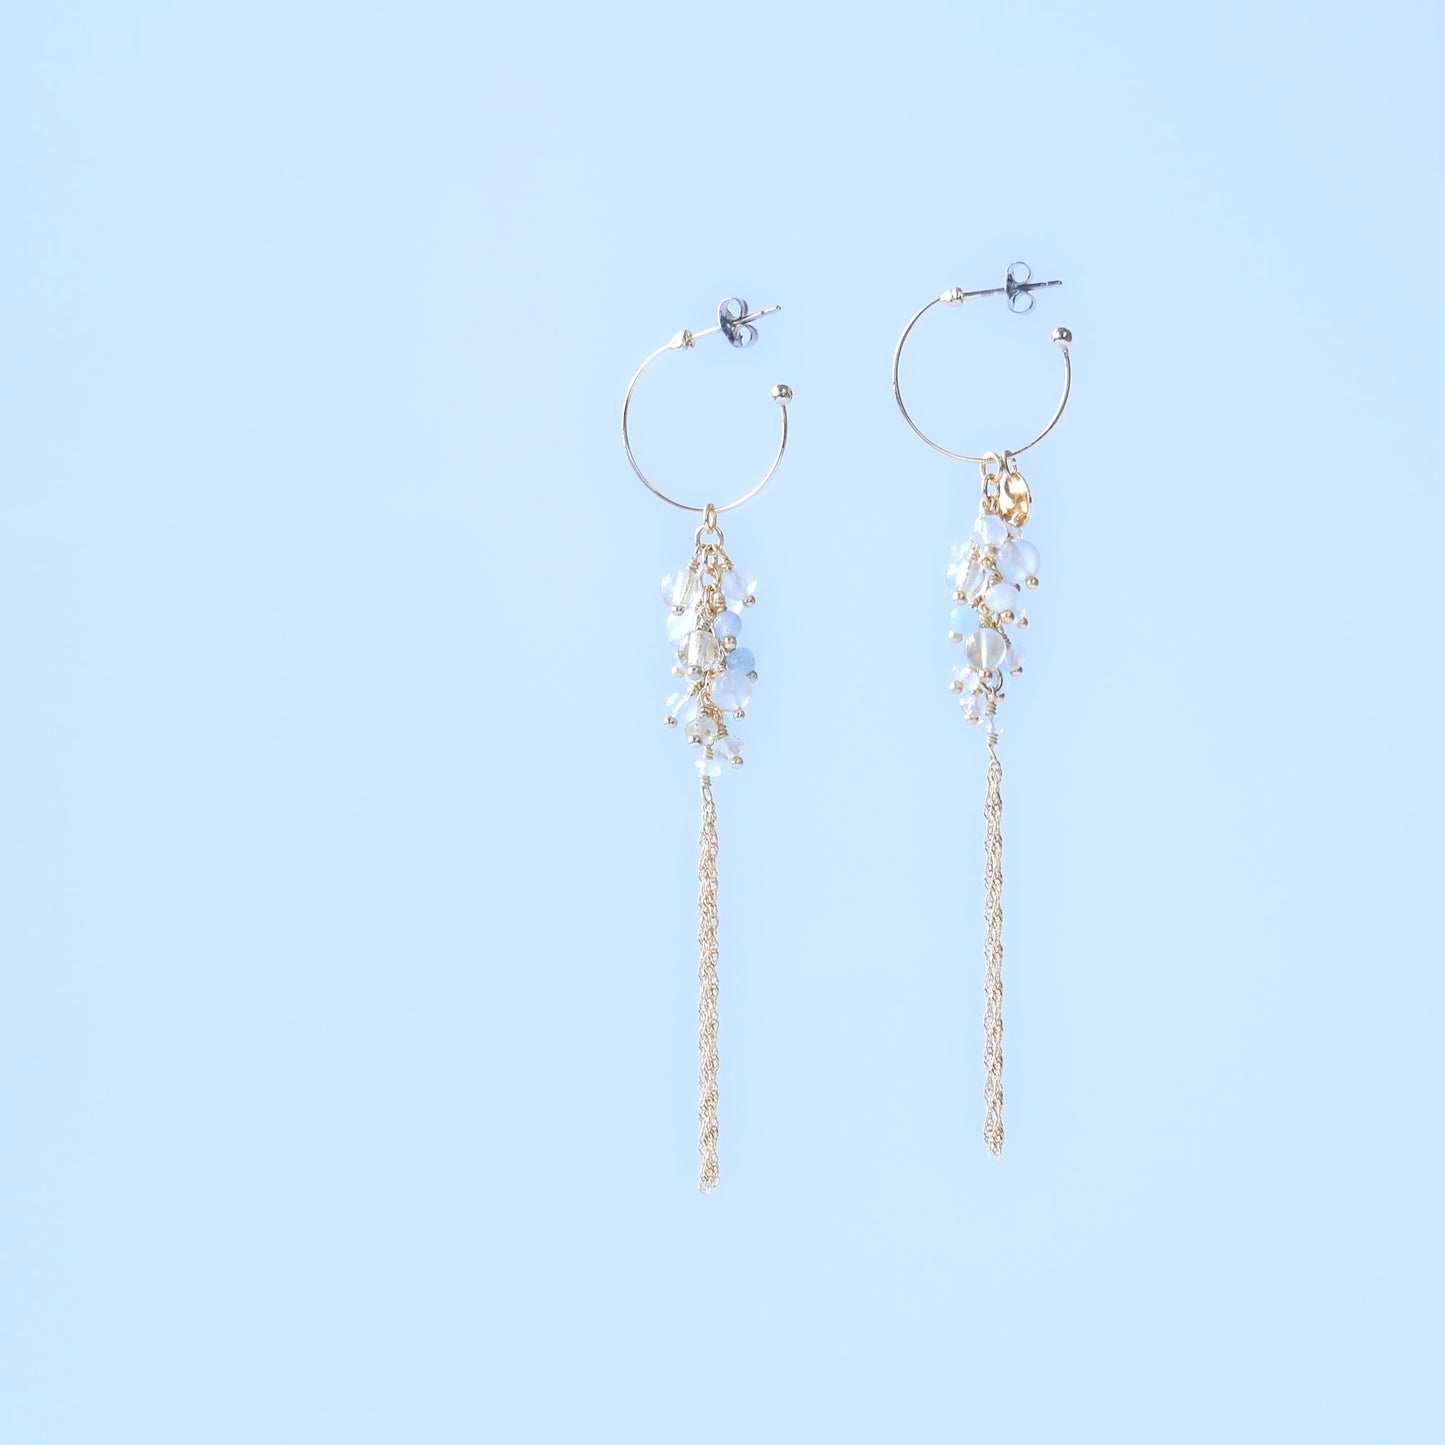 Golden Rutile Quartz and Calcedney chain tassel earrings